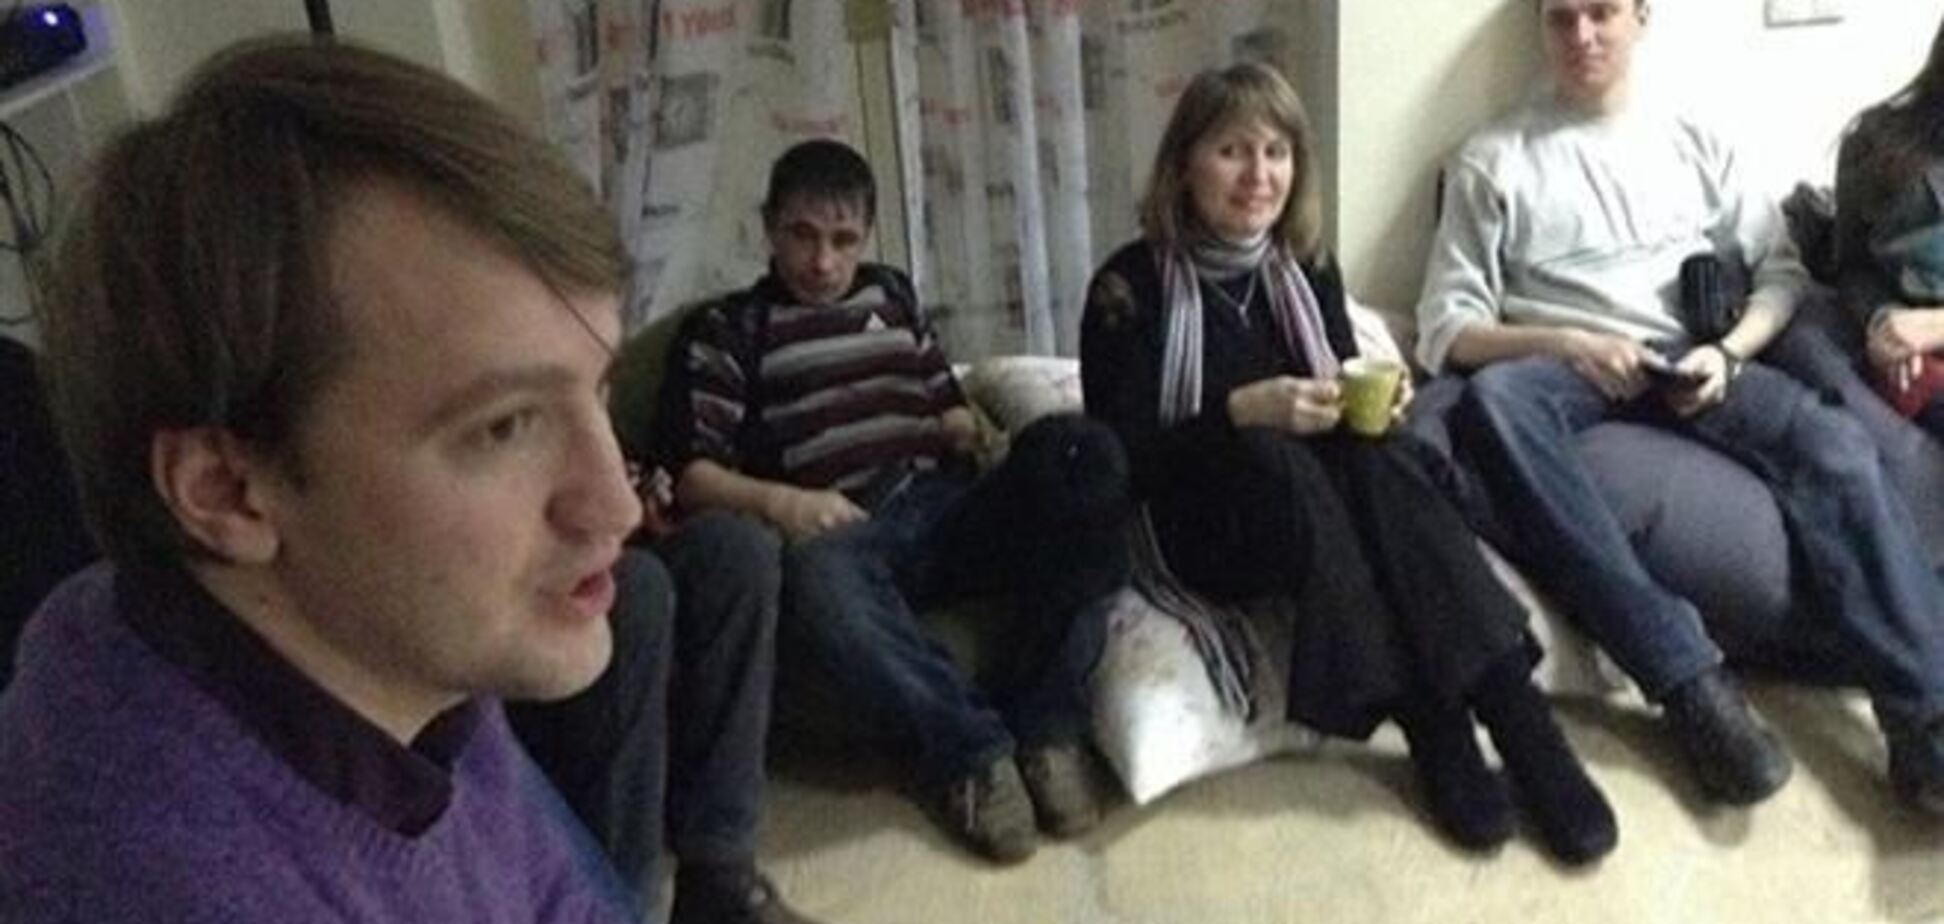 По конфликту между евромайдановцами и жителями Донецка проводится проверка